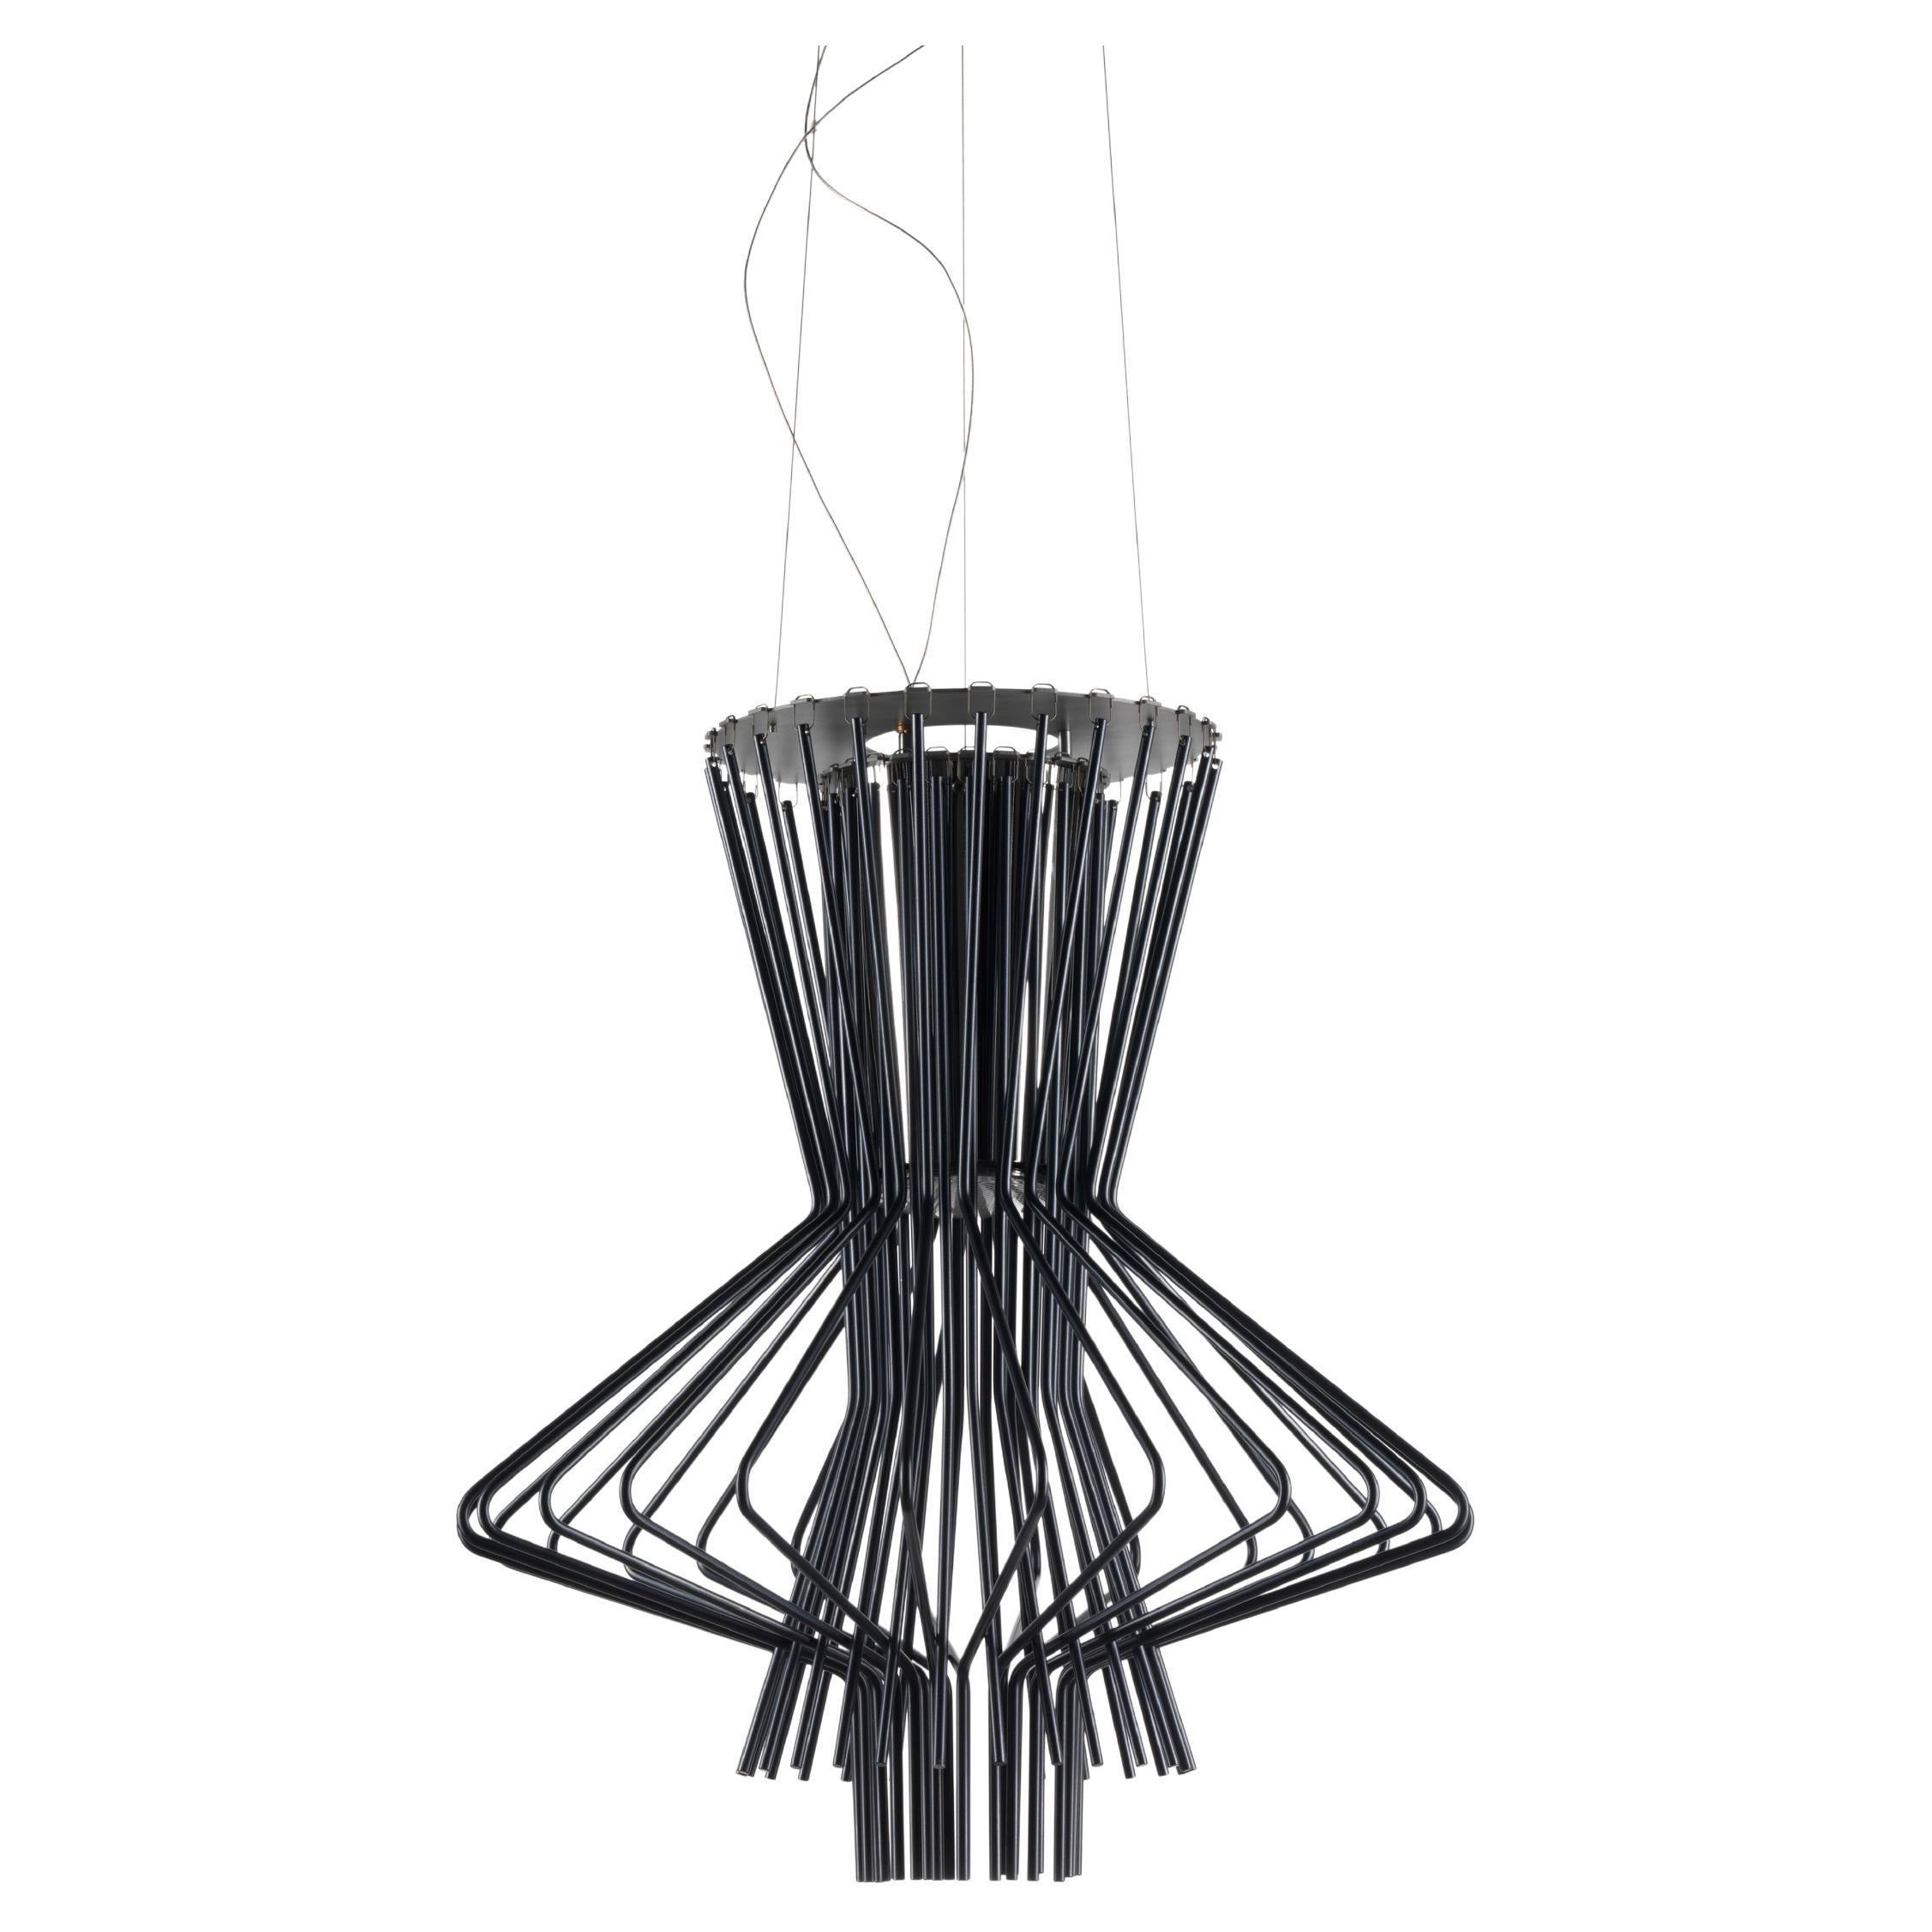 Foscarini Allegretto Ritmico Suspension Lamp by Atelier Oi For Sale